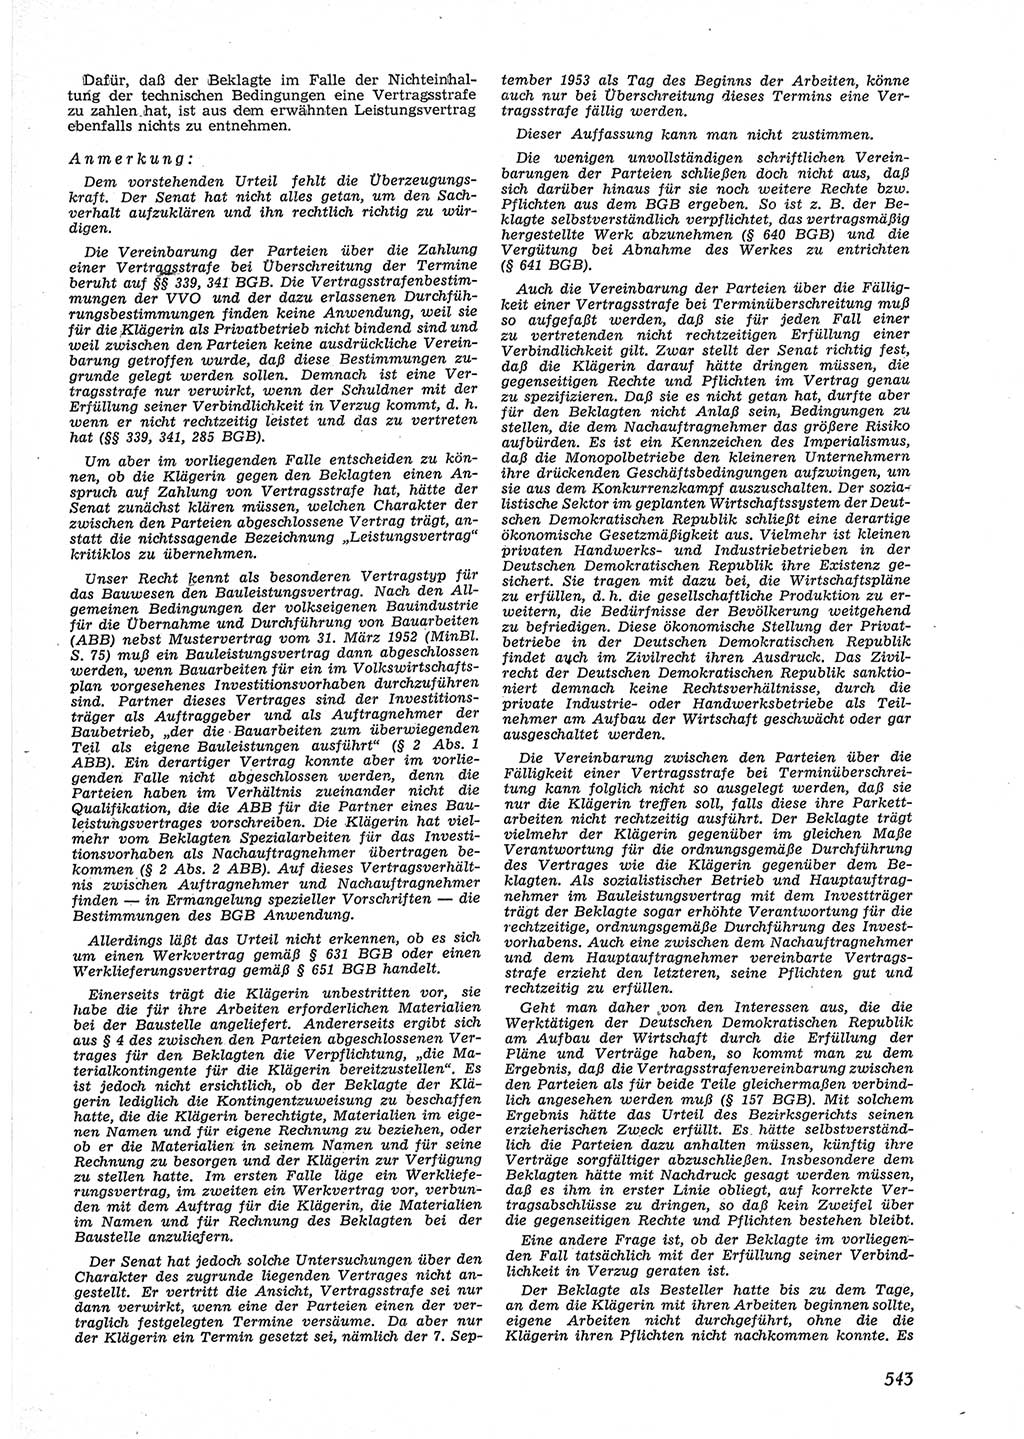 Neue Justiz (NJ), Zeitschrift für Recht und Rechtswissenschaft [Deutsche Demokratische Republik (DDR)], 9. Jahrgang 1955, Seite 543 (NJ DDR 1955, S. 543)